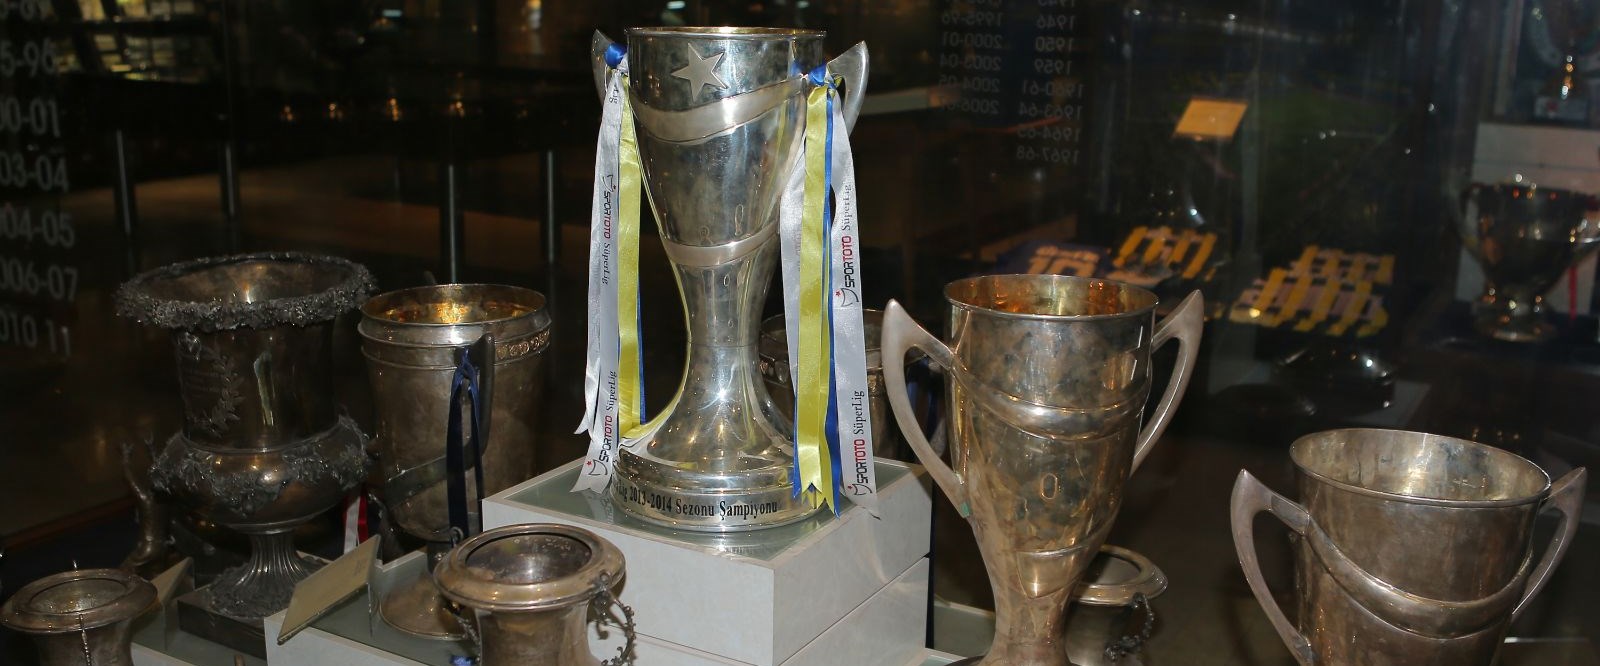 Fenerbahçe sayılmayan şampiyonluklar için harekete geçti